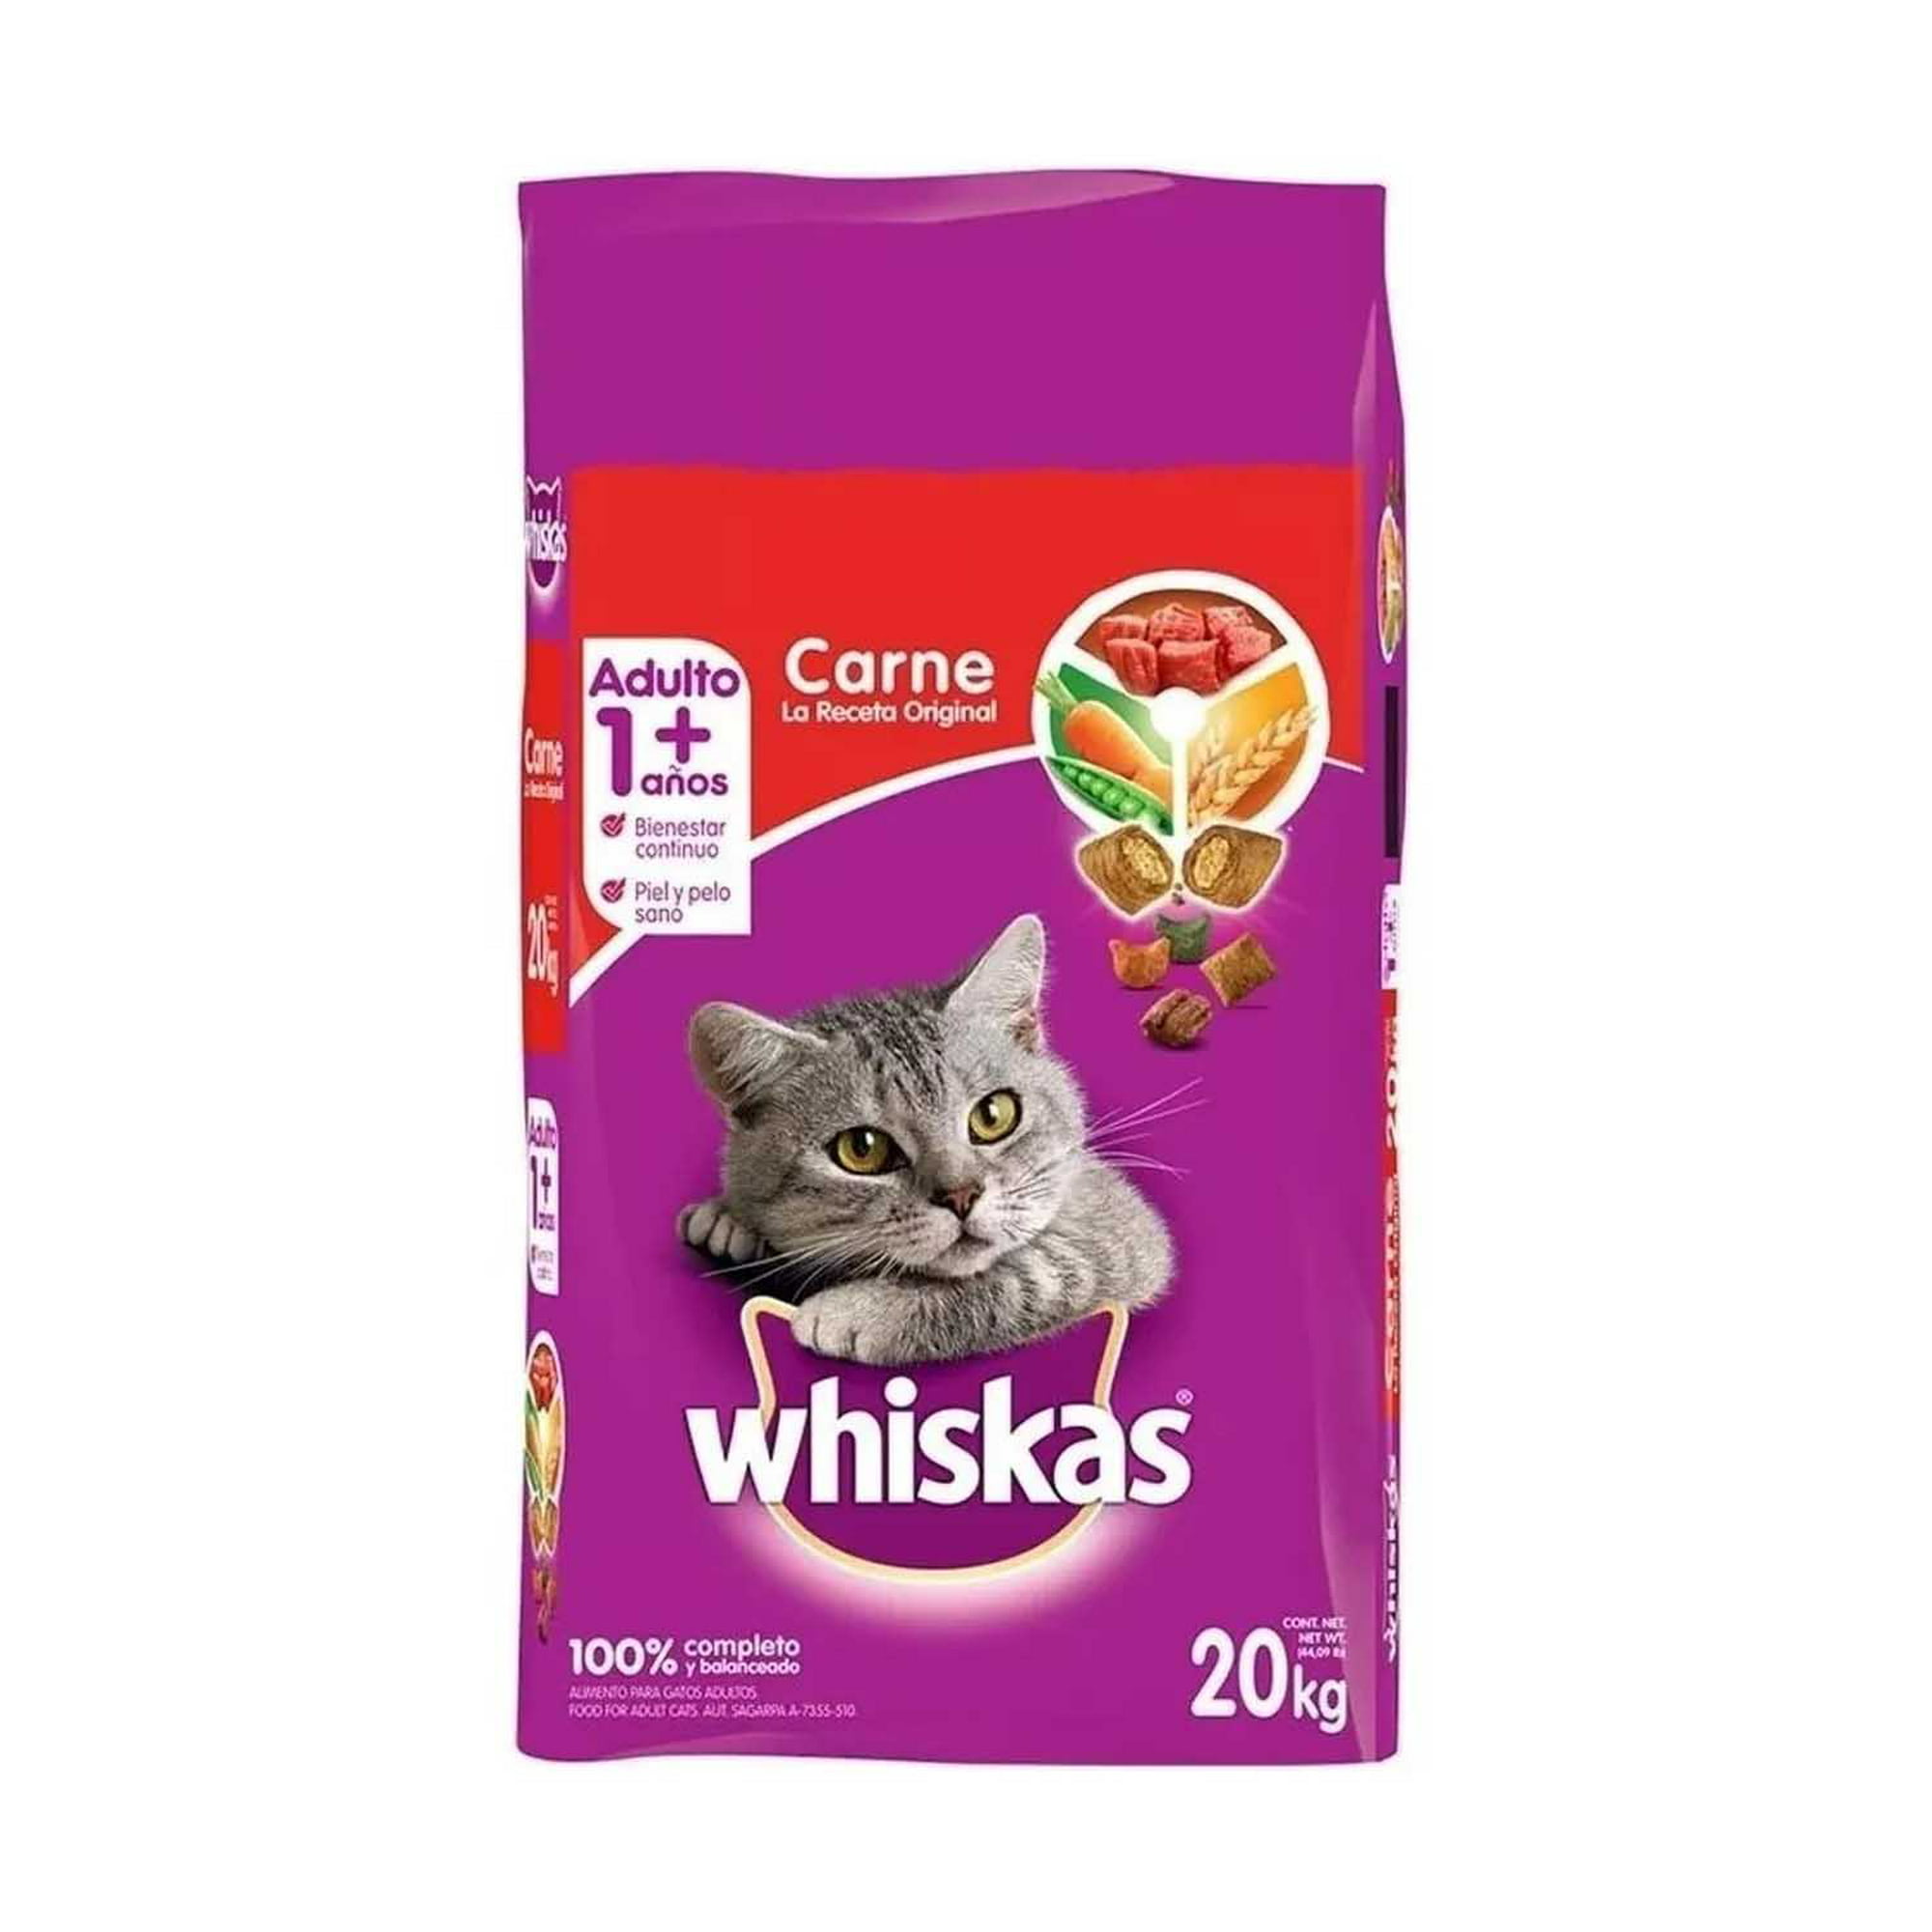 Gran cantidad de pasar por alto Estrecho de Bering Whiskas alimento para Gatos Adultos Carne Receta Orginal 20Kg Whiskas Carne  receta original | Bodega Aurrera en línea